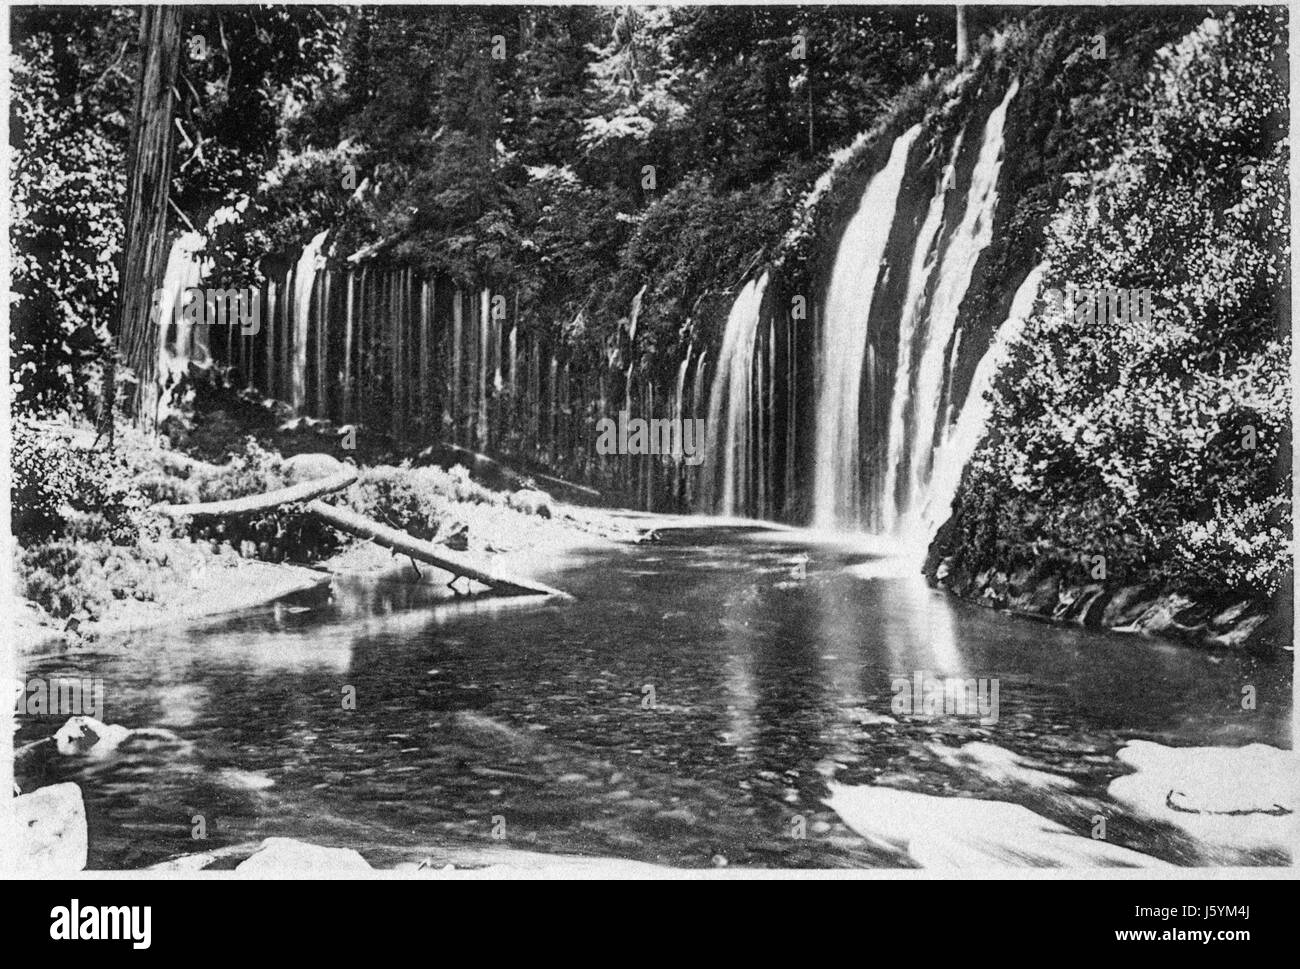 Mossbrae Falls, la rivière Sacramento, Californie, USA, photogravure, Denison News Co., 1903 Banque D'Images